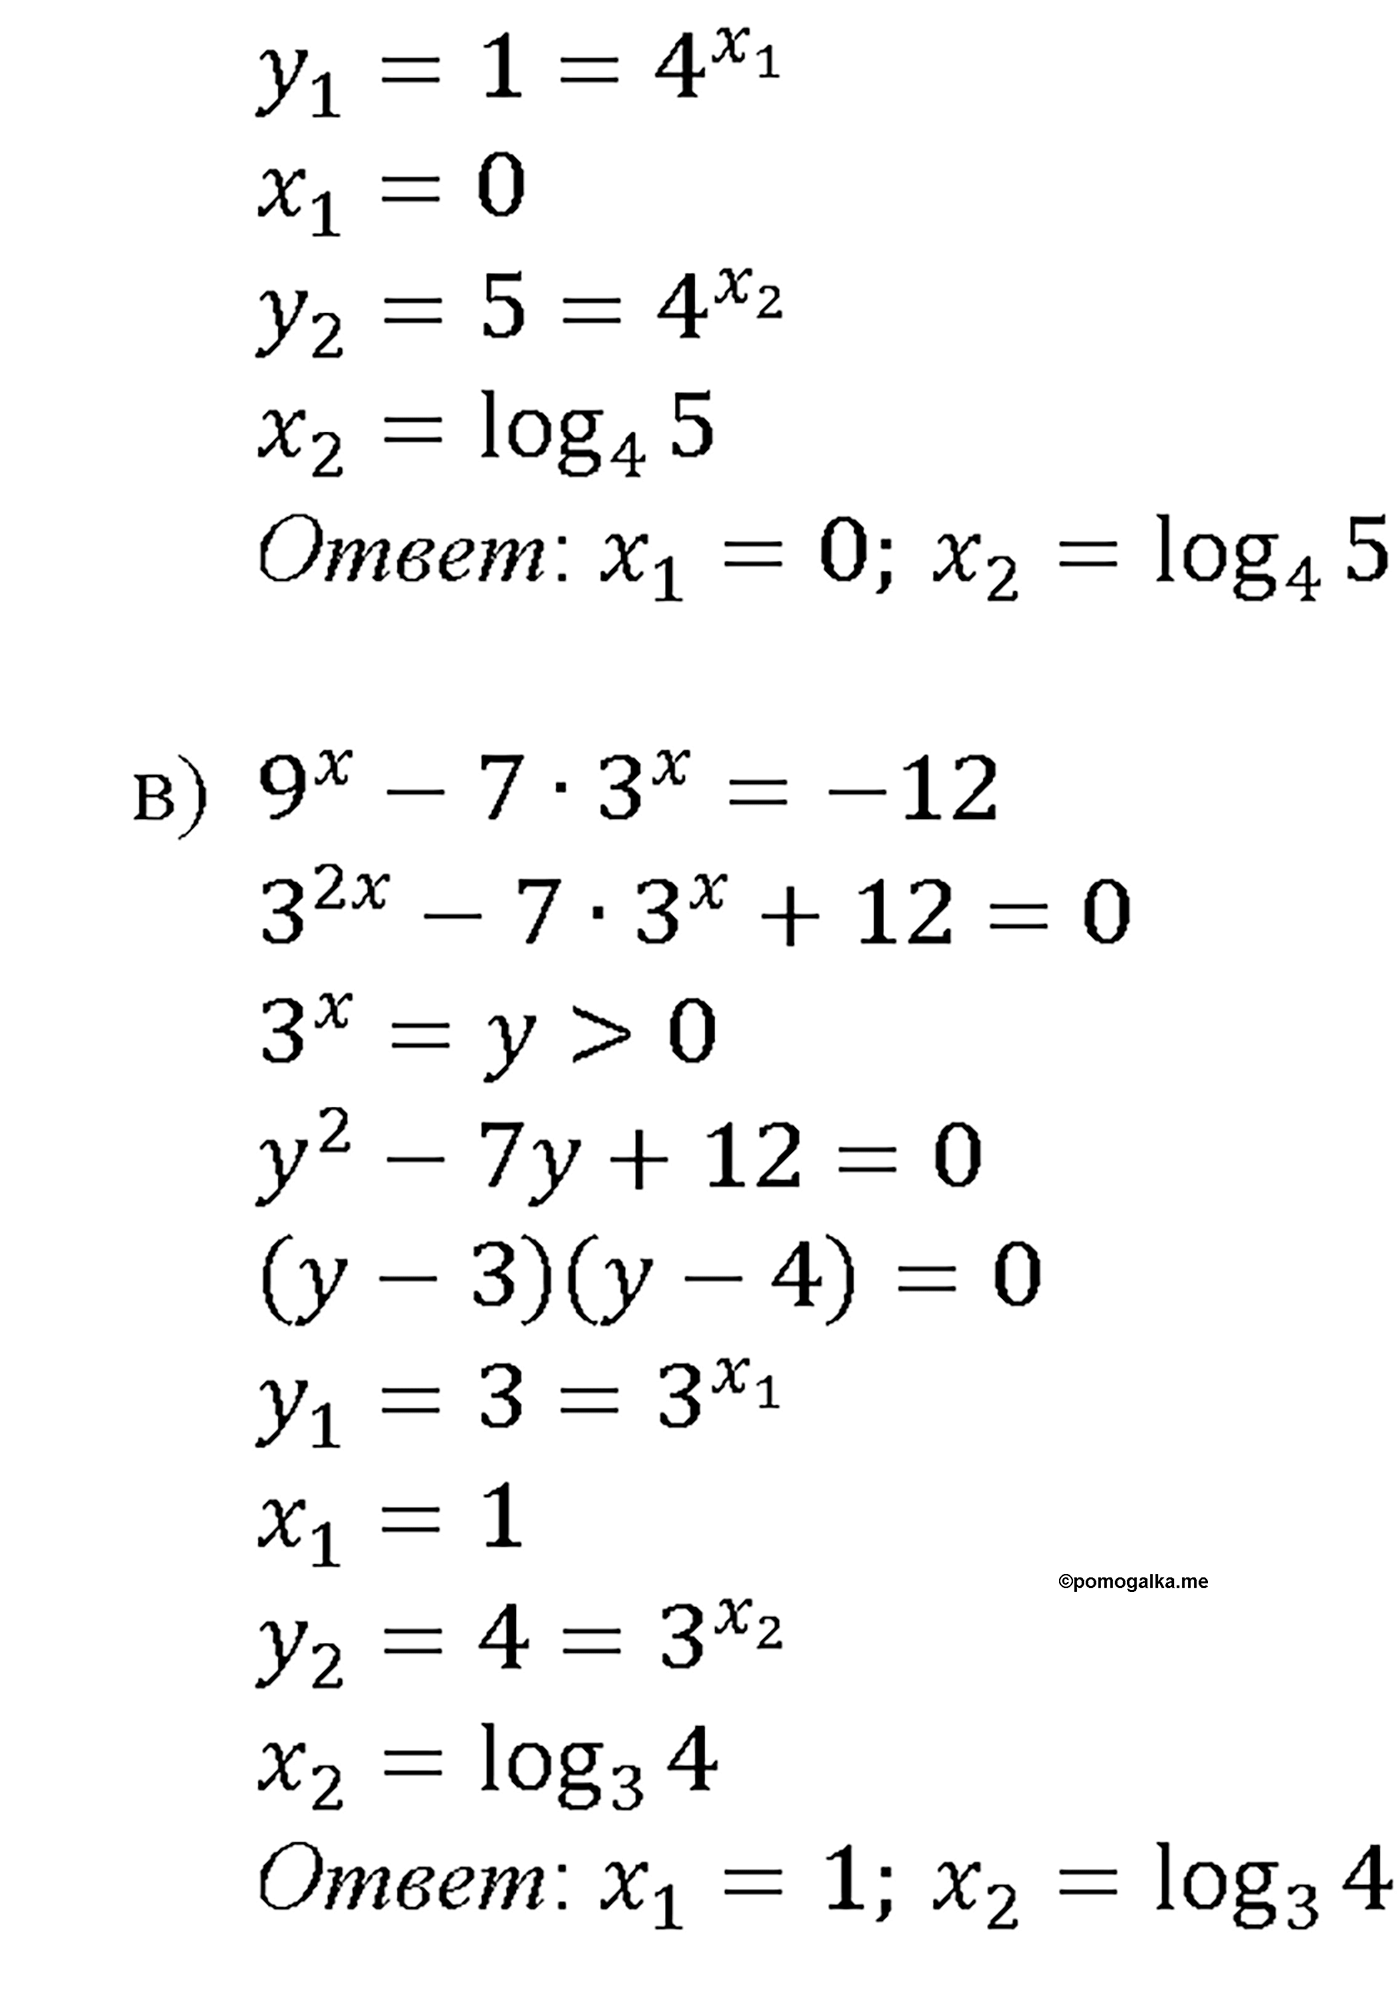 задача №41.17 алгебра 10-11 класс Мордкович